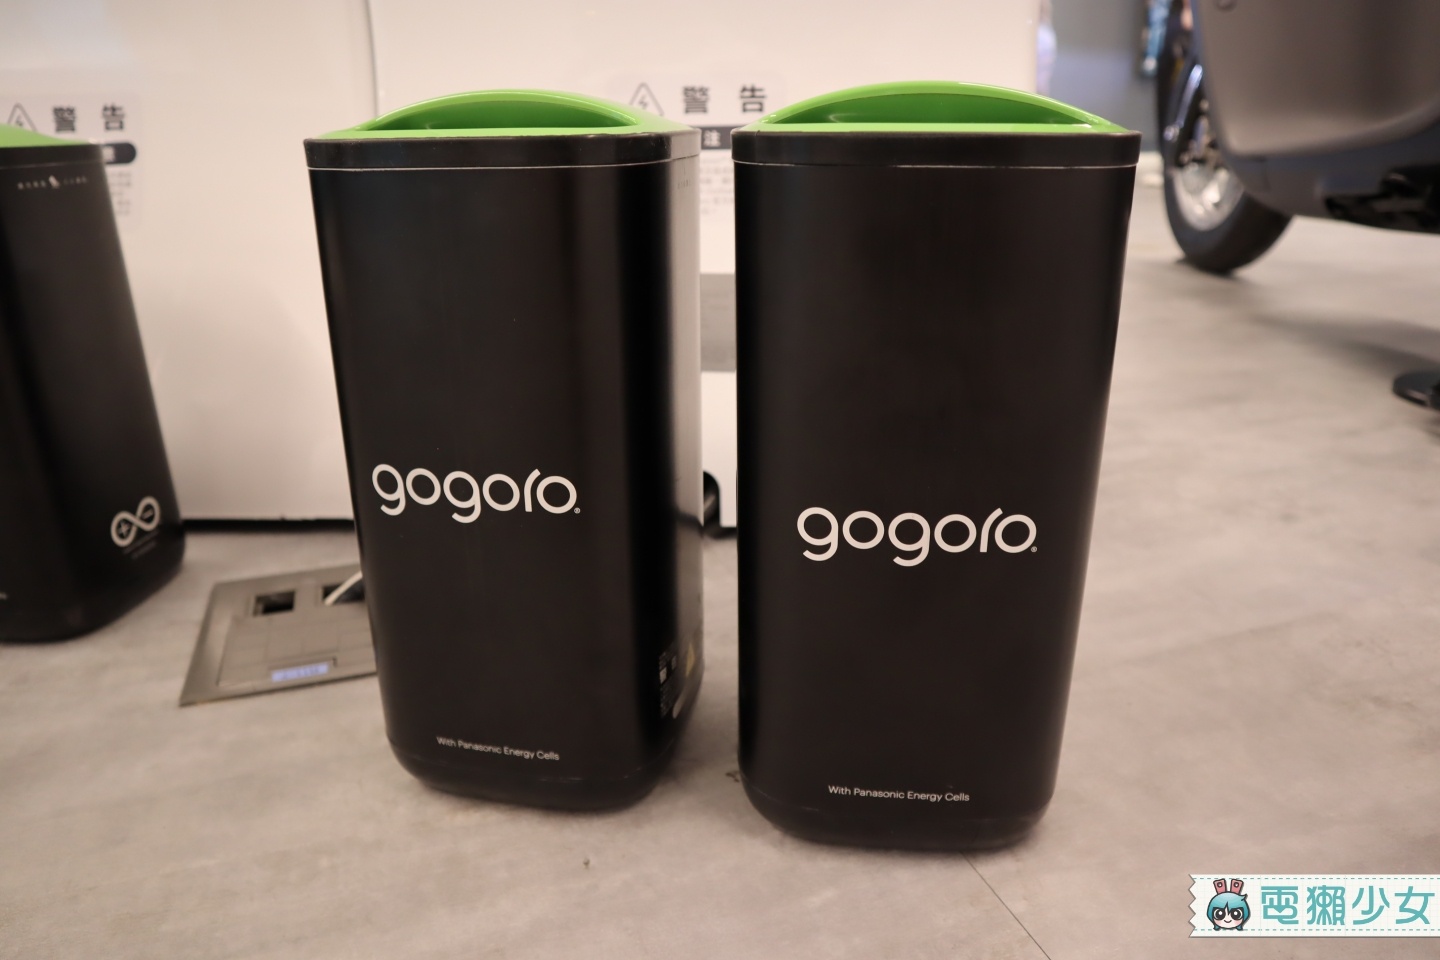 出門｜Gogoro 2系列新升級 前方多了『 多功能置物架 』8/31前購車 前六個月電池資費0元起